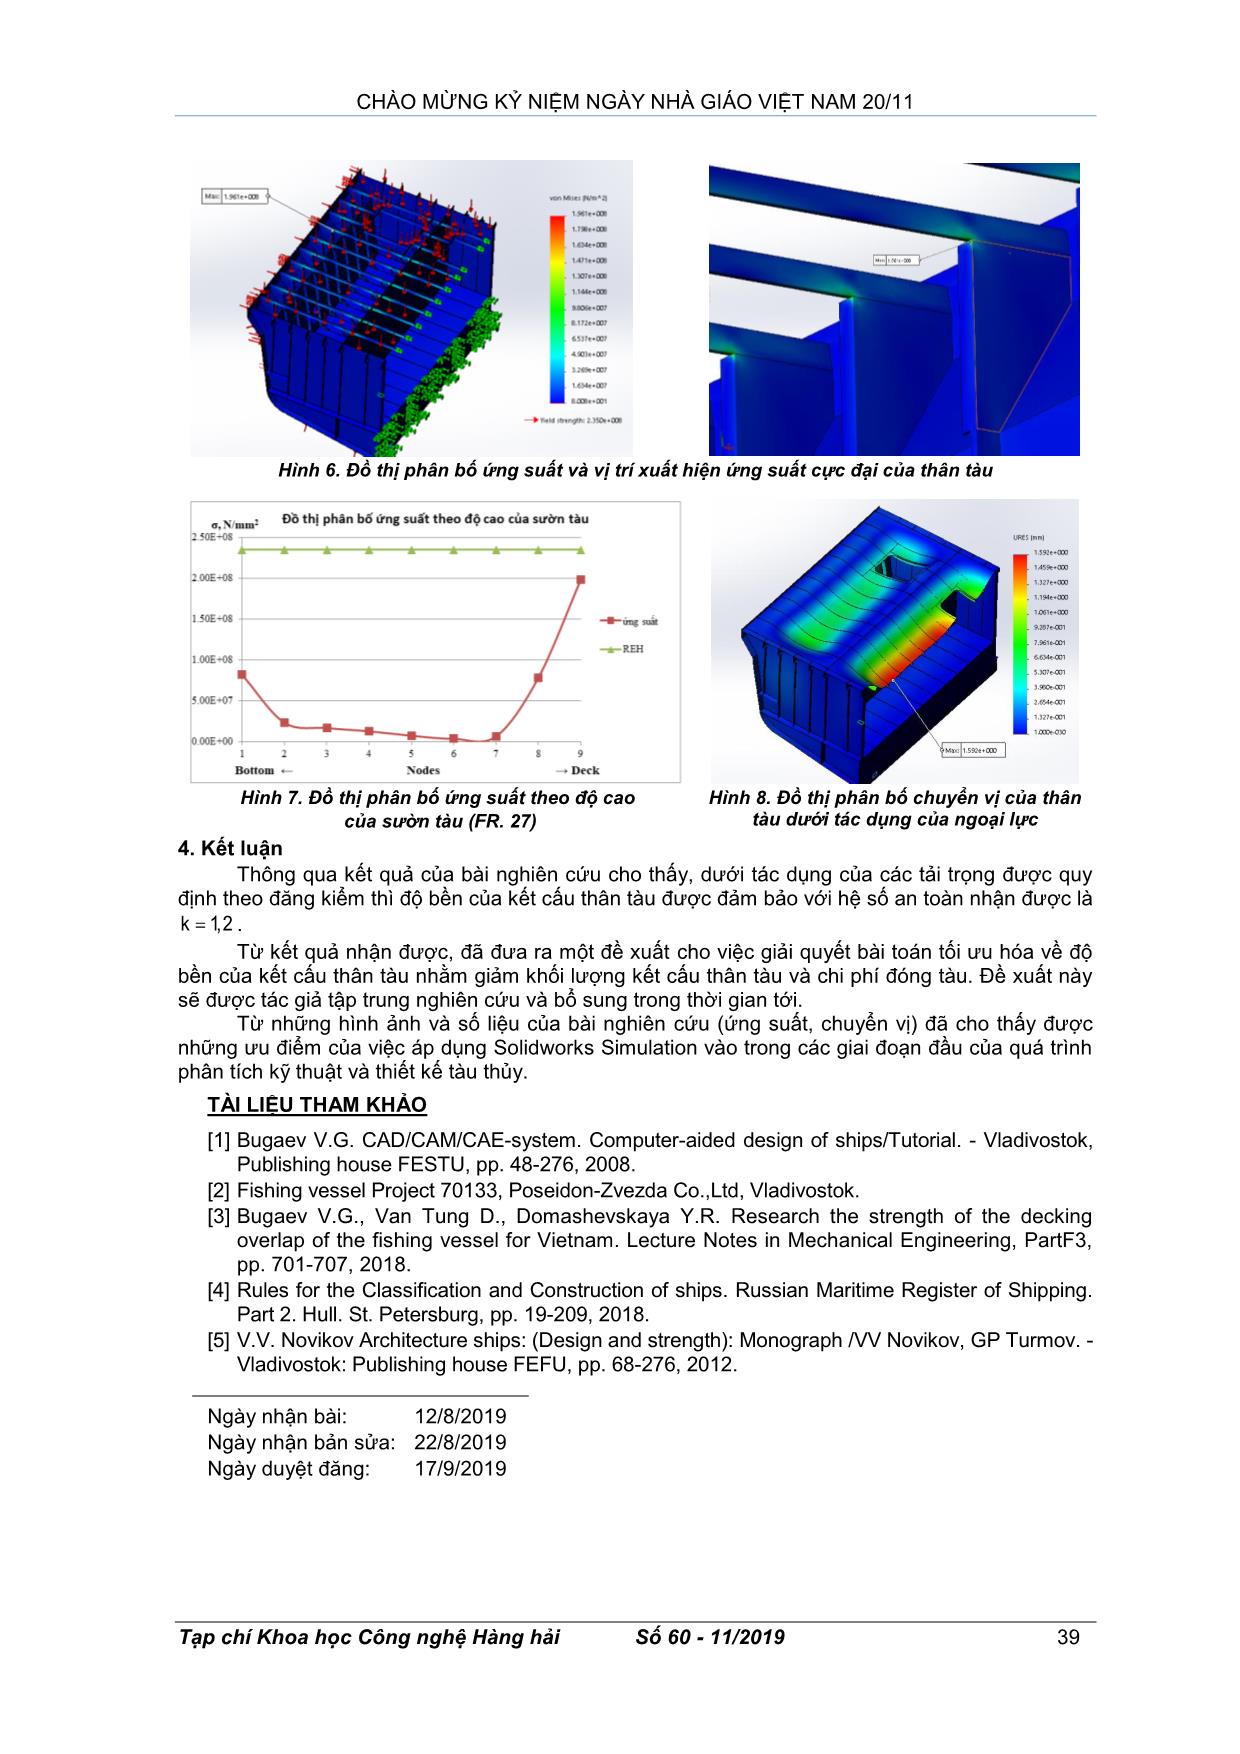 Nghiên cứu độ bền của tàu cá bằng việc sử dụng Solidworks Simulation trang 4